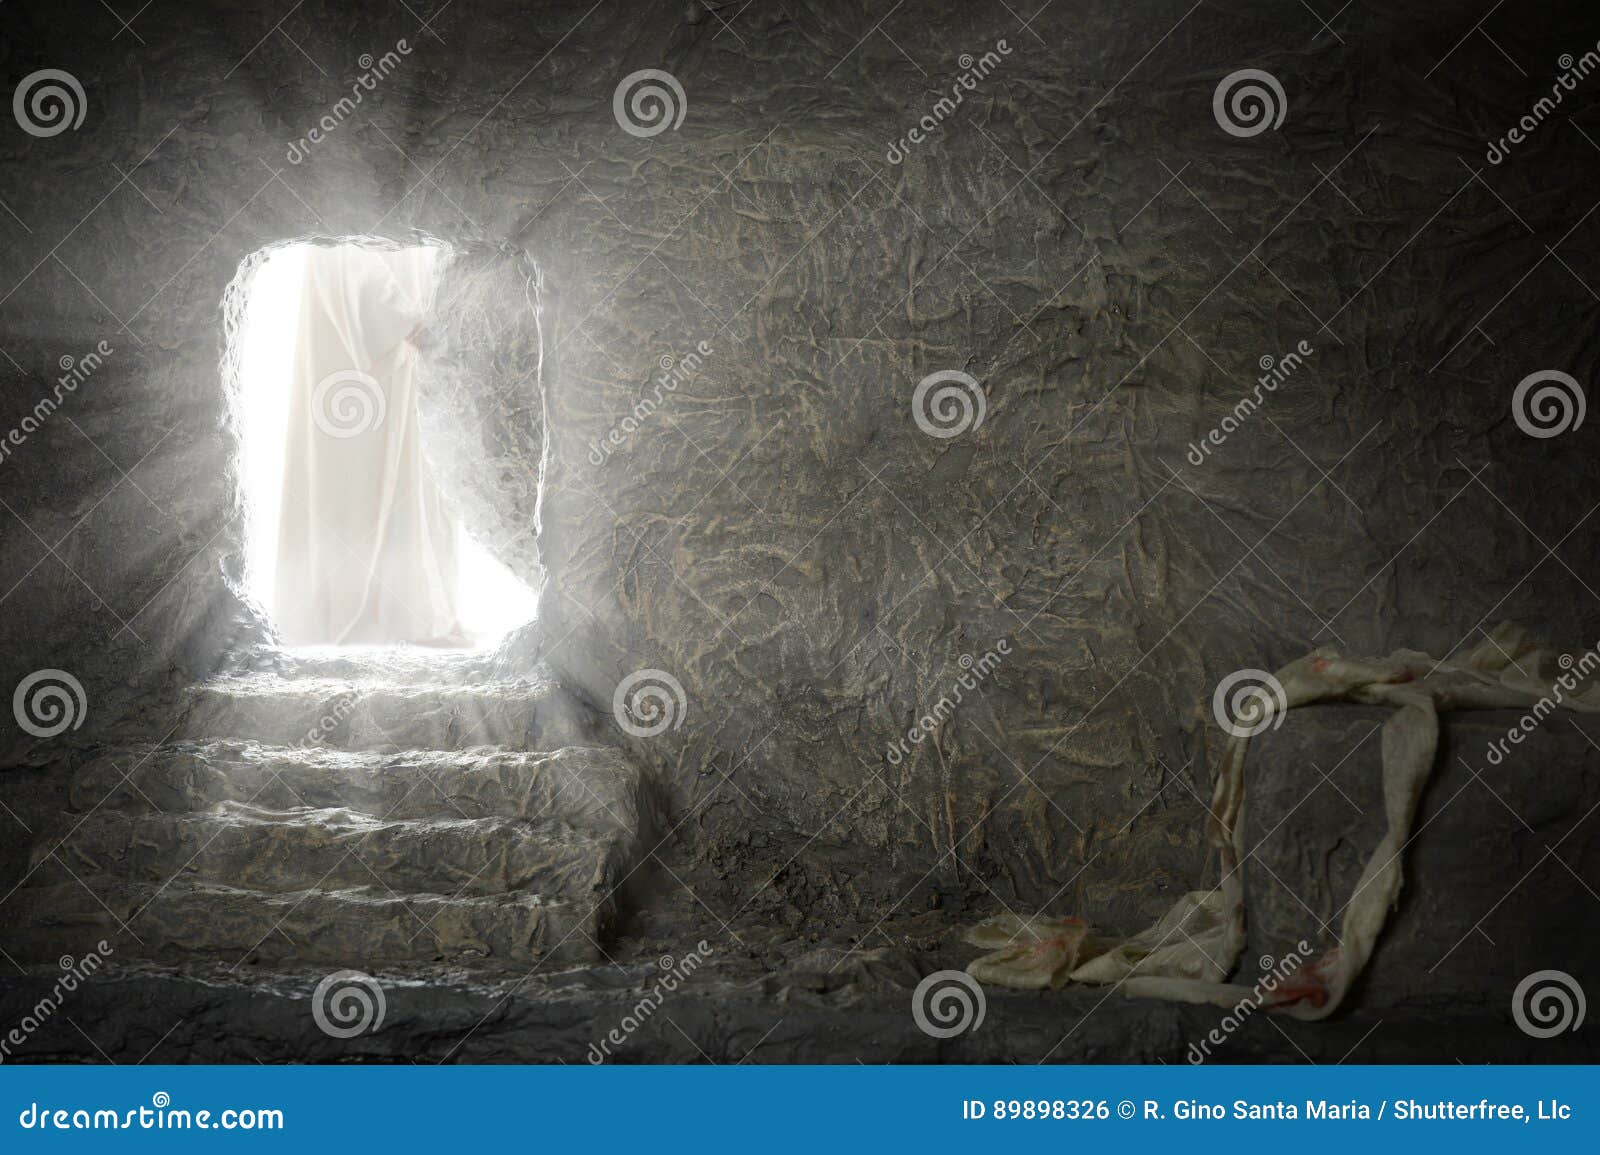 jesus leaving empty tomb